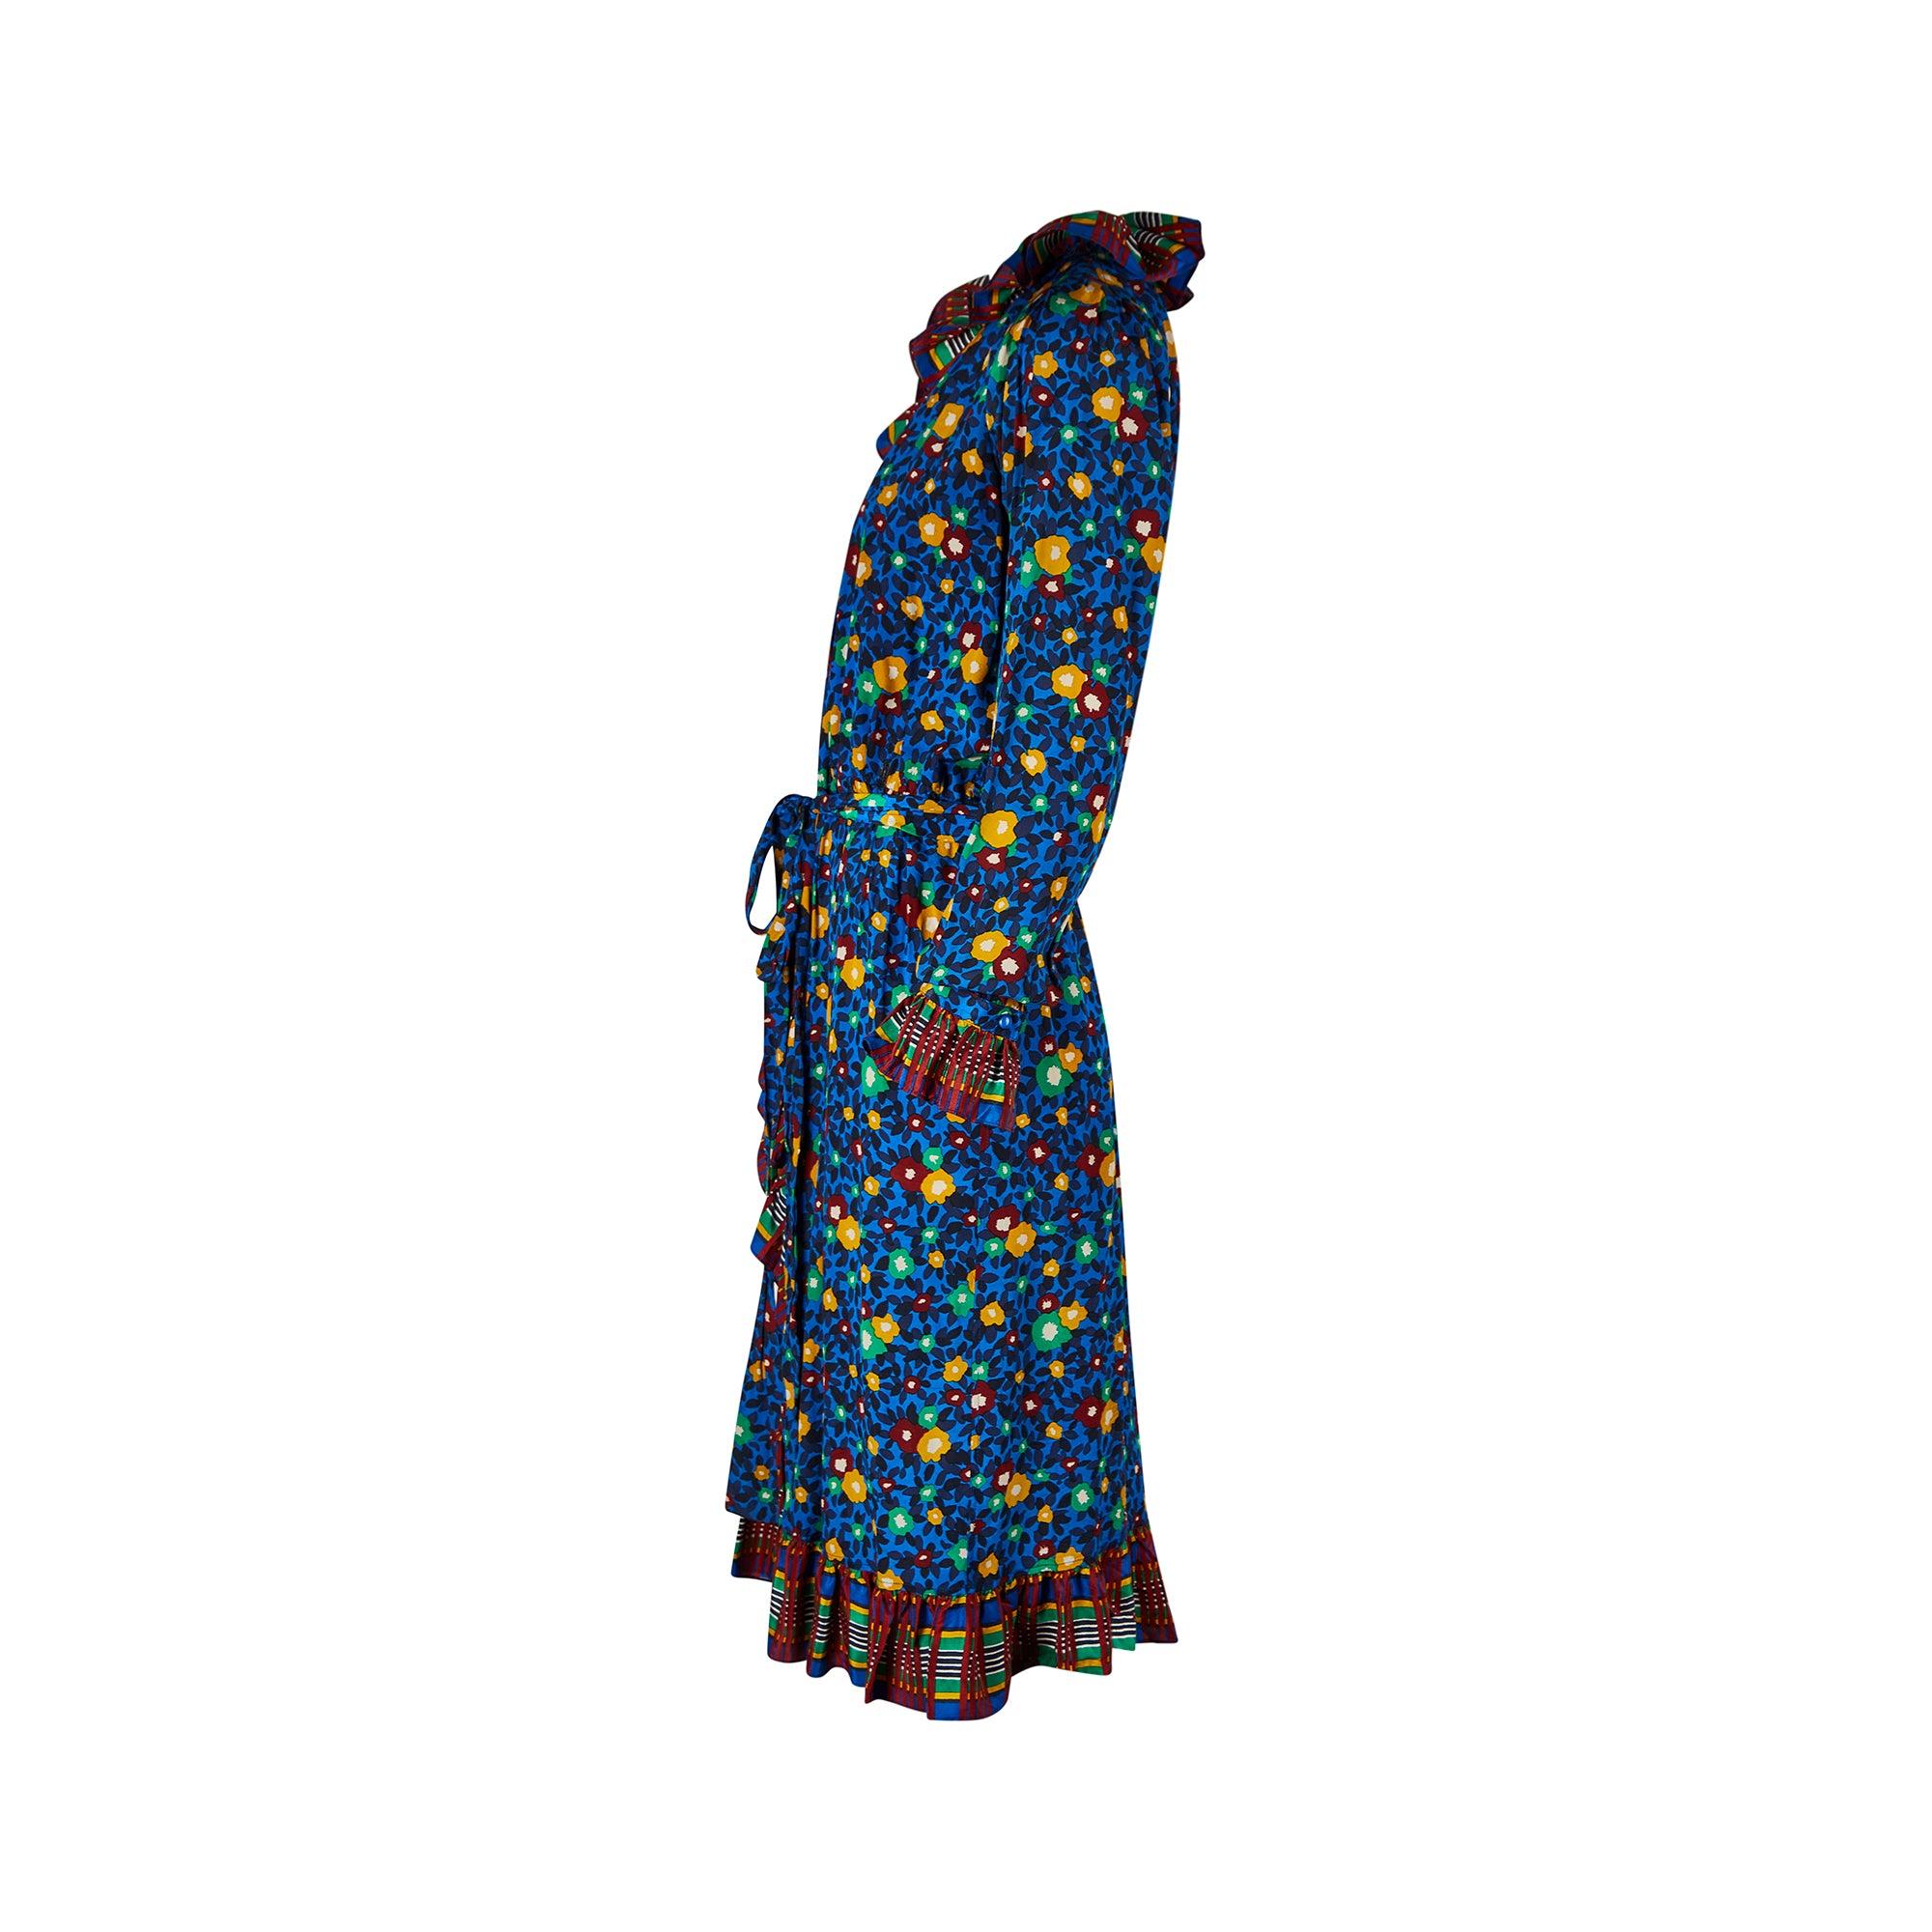 Dieses vom Laufsteg dokumentierte Seiden-Wickelkleid stammt aus der Frühjahr/Sommer-Kollektion 1980 von Yves Saint Laurent. Der malerische Blumendruck wird durch ein Karo an Kragen, Manschetten und Saum kontrastiert, die allesamt dekadent gerafft